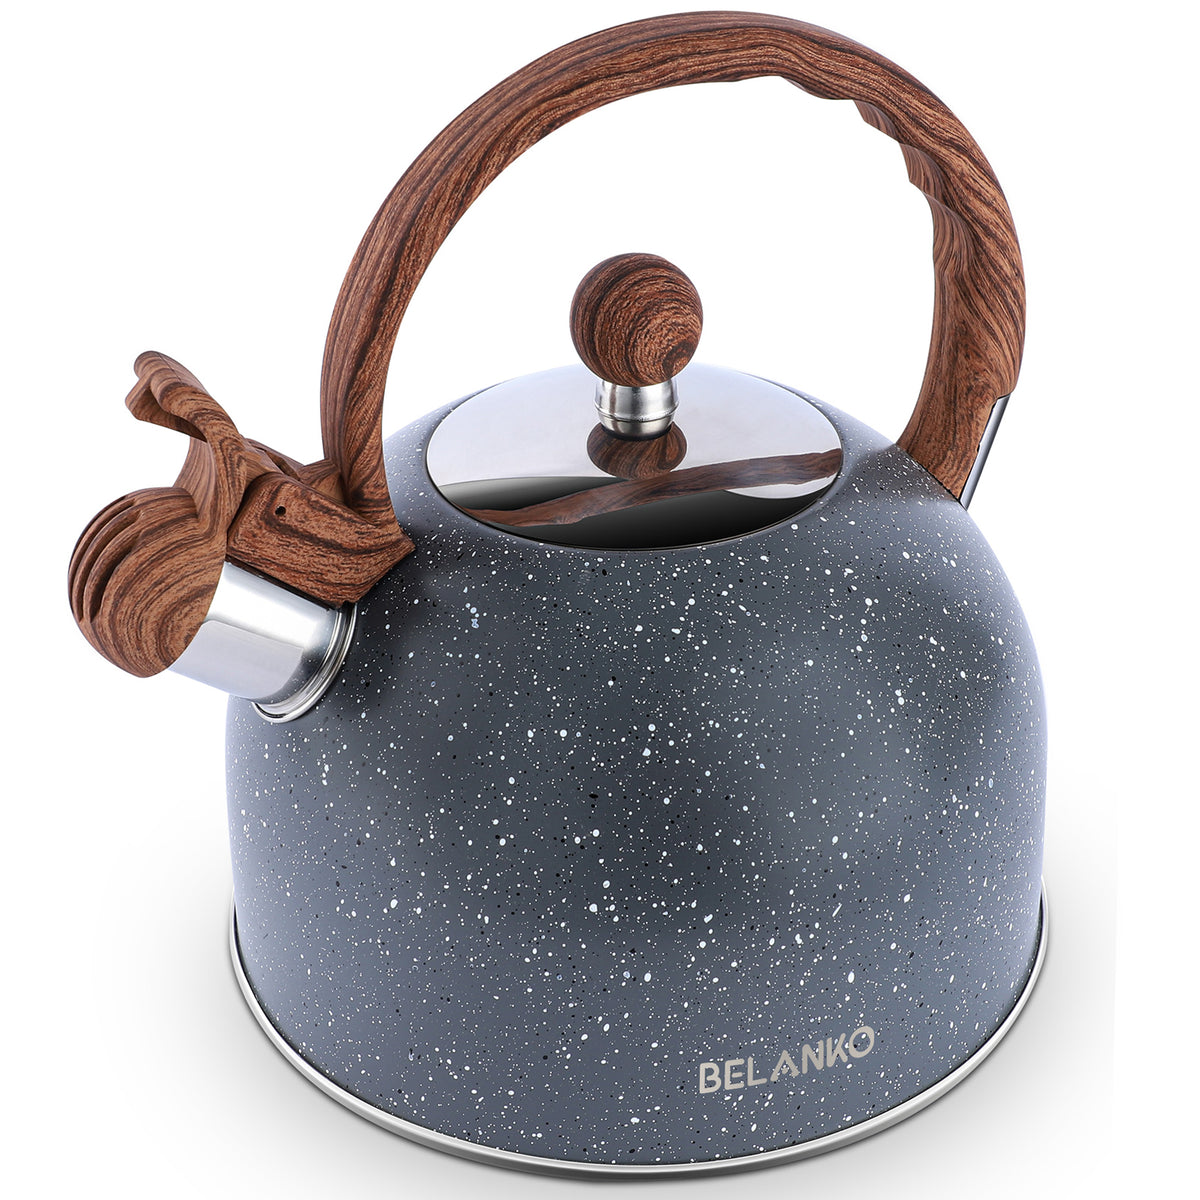 BELANKO™ 2.7 Quart Whistling Starry Tea Kettle - Gray